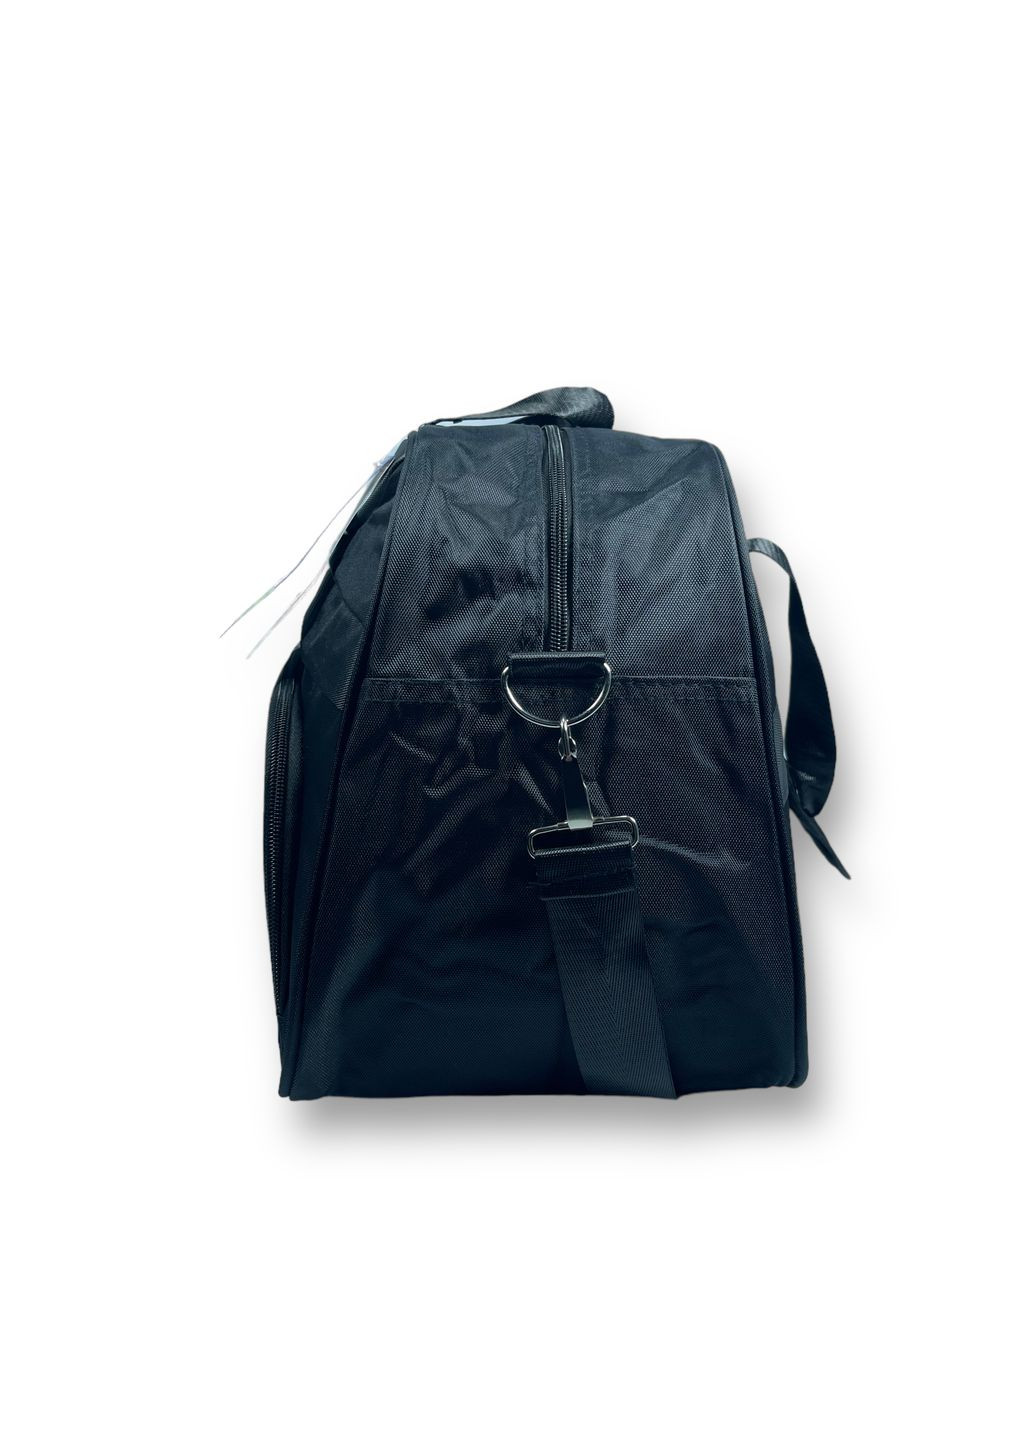 Дорожная сумка 30 л Jiliping 1 отделение 1 скрытое отделение размер: 28*50*22 см черная Jilipng (285814808)